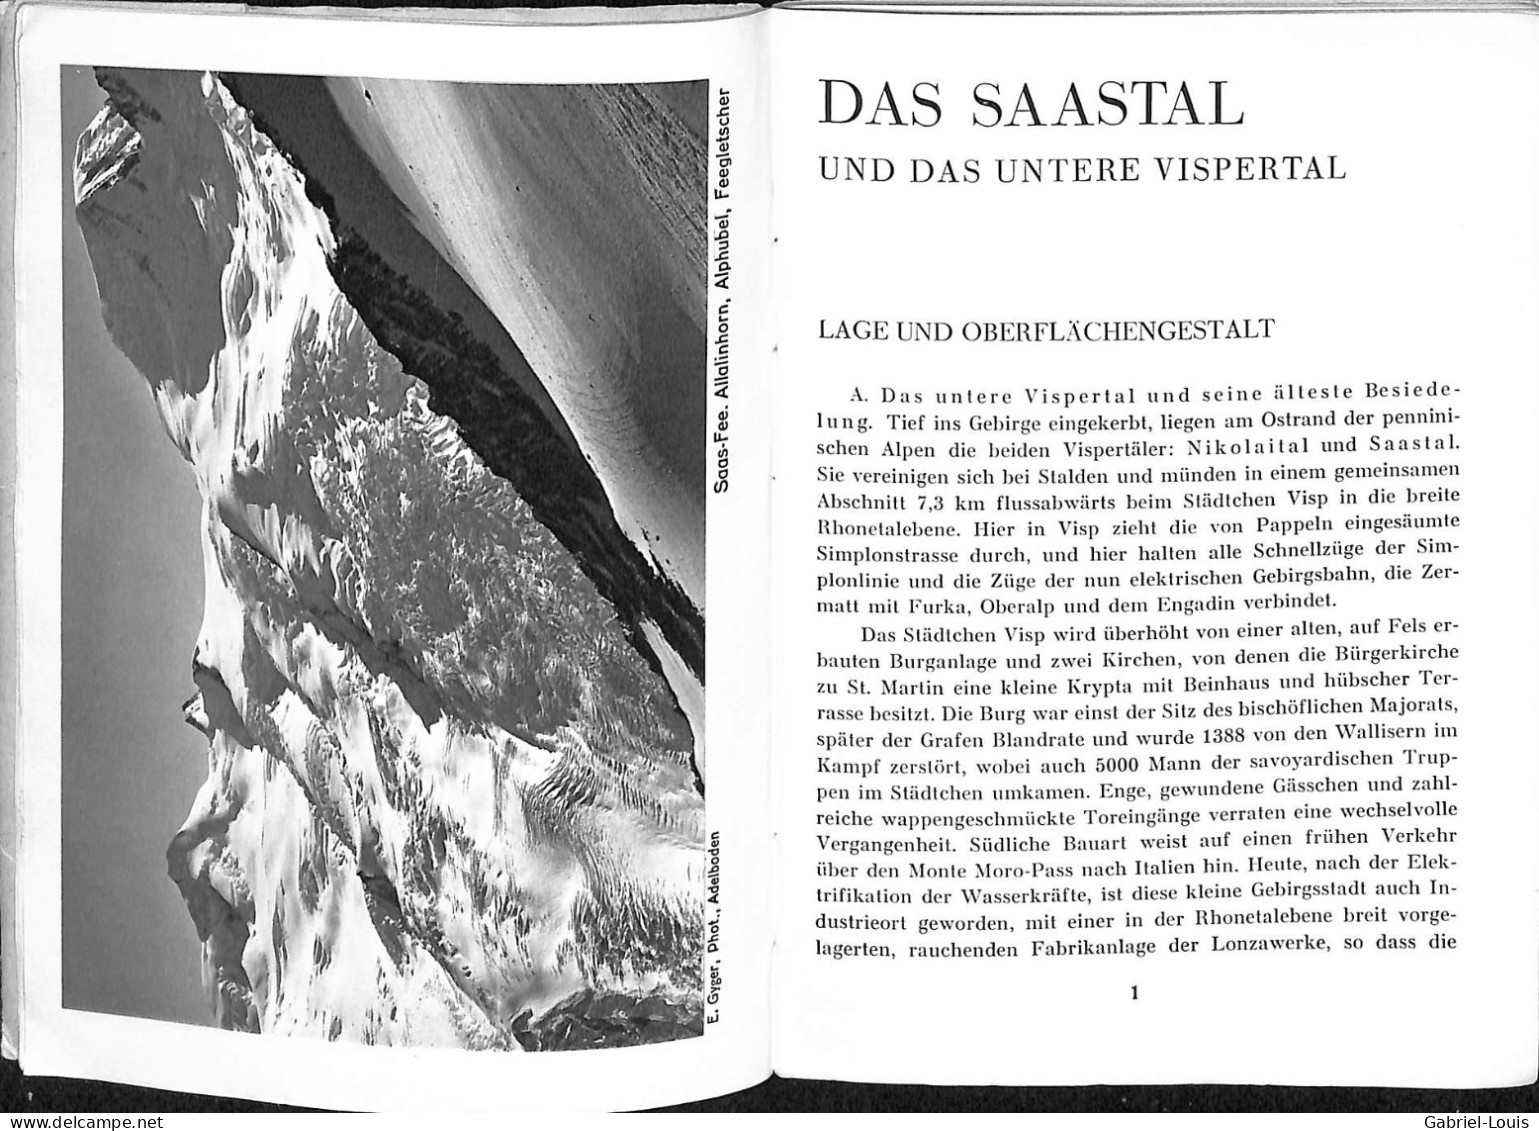 Poststrasse Saastal Saas-Fee Saas-Groud Géologie Alpenflora - Reiseprospekte